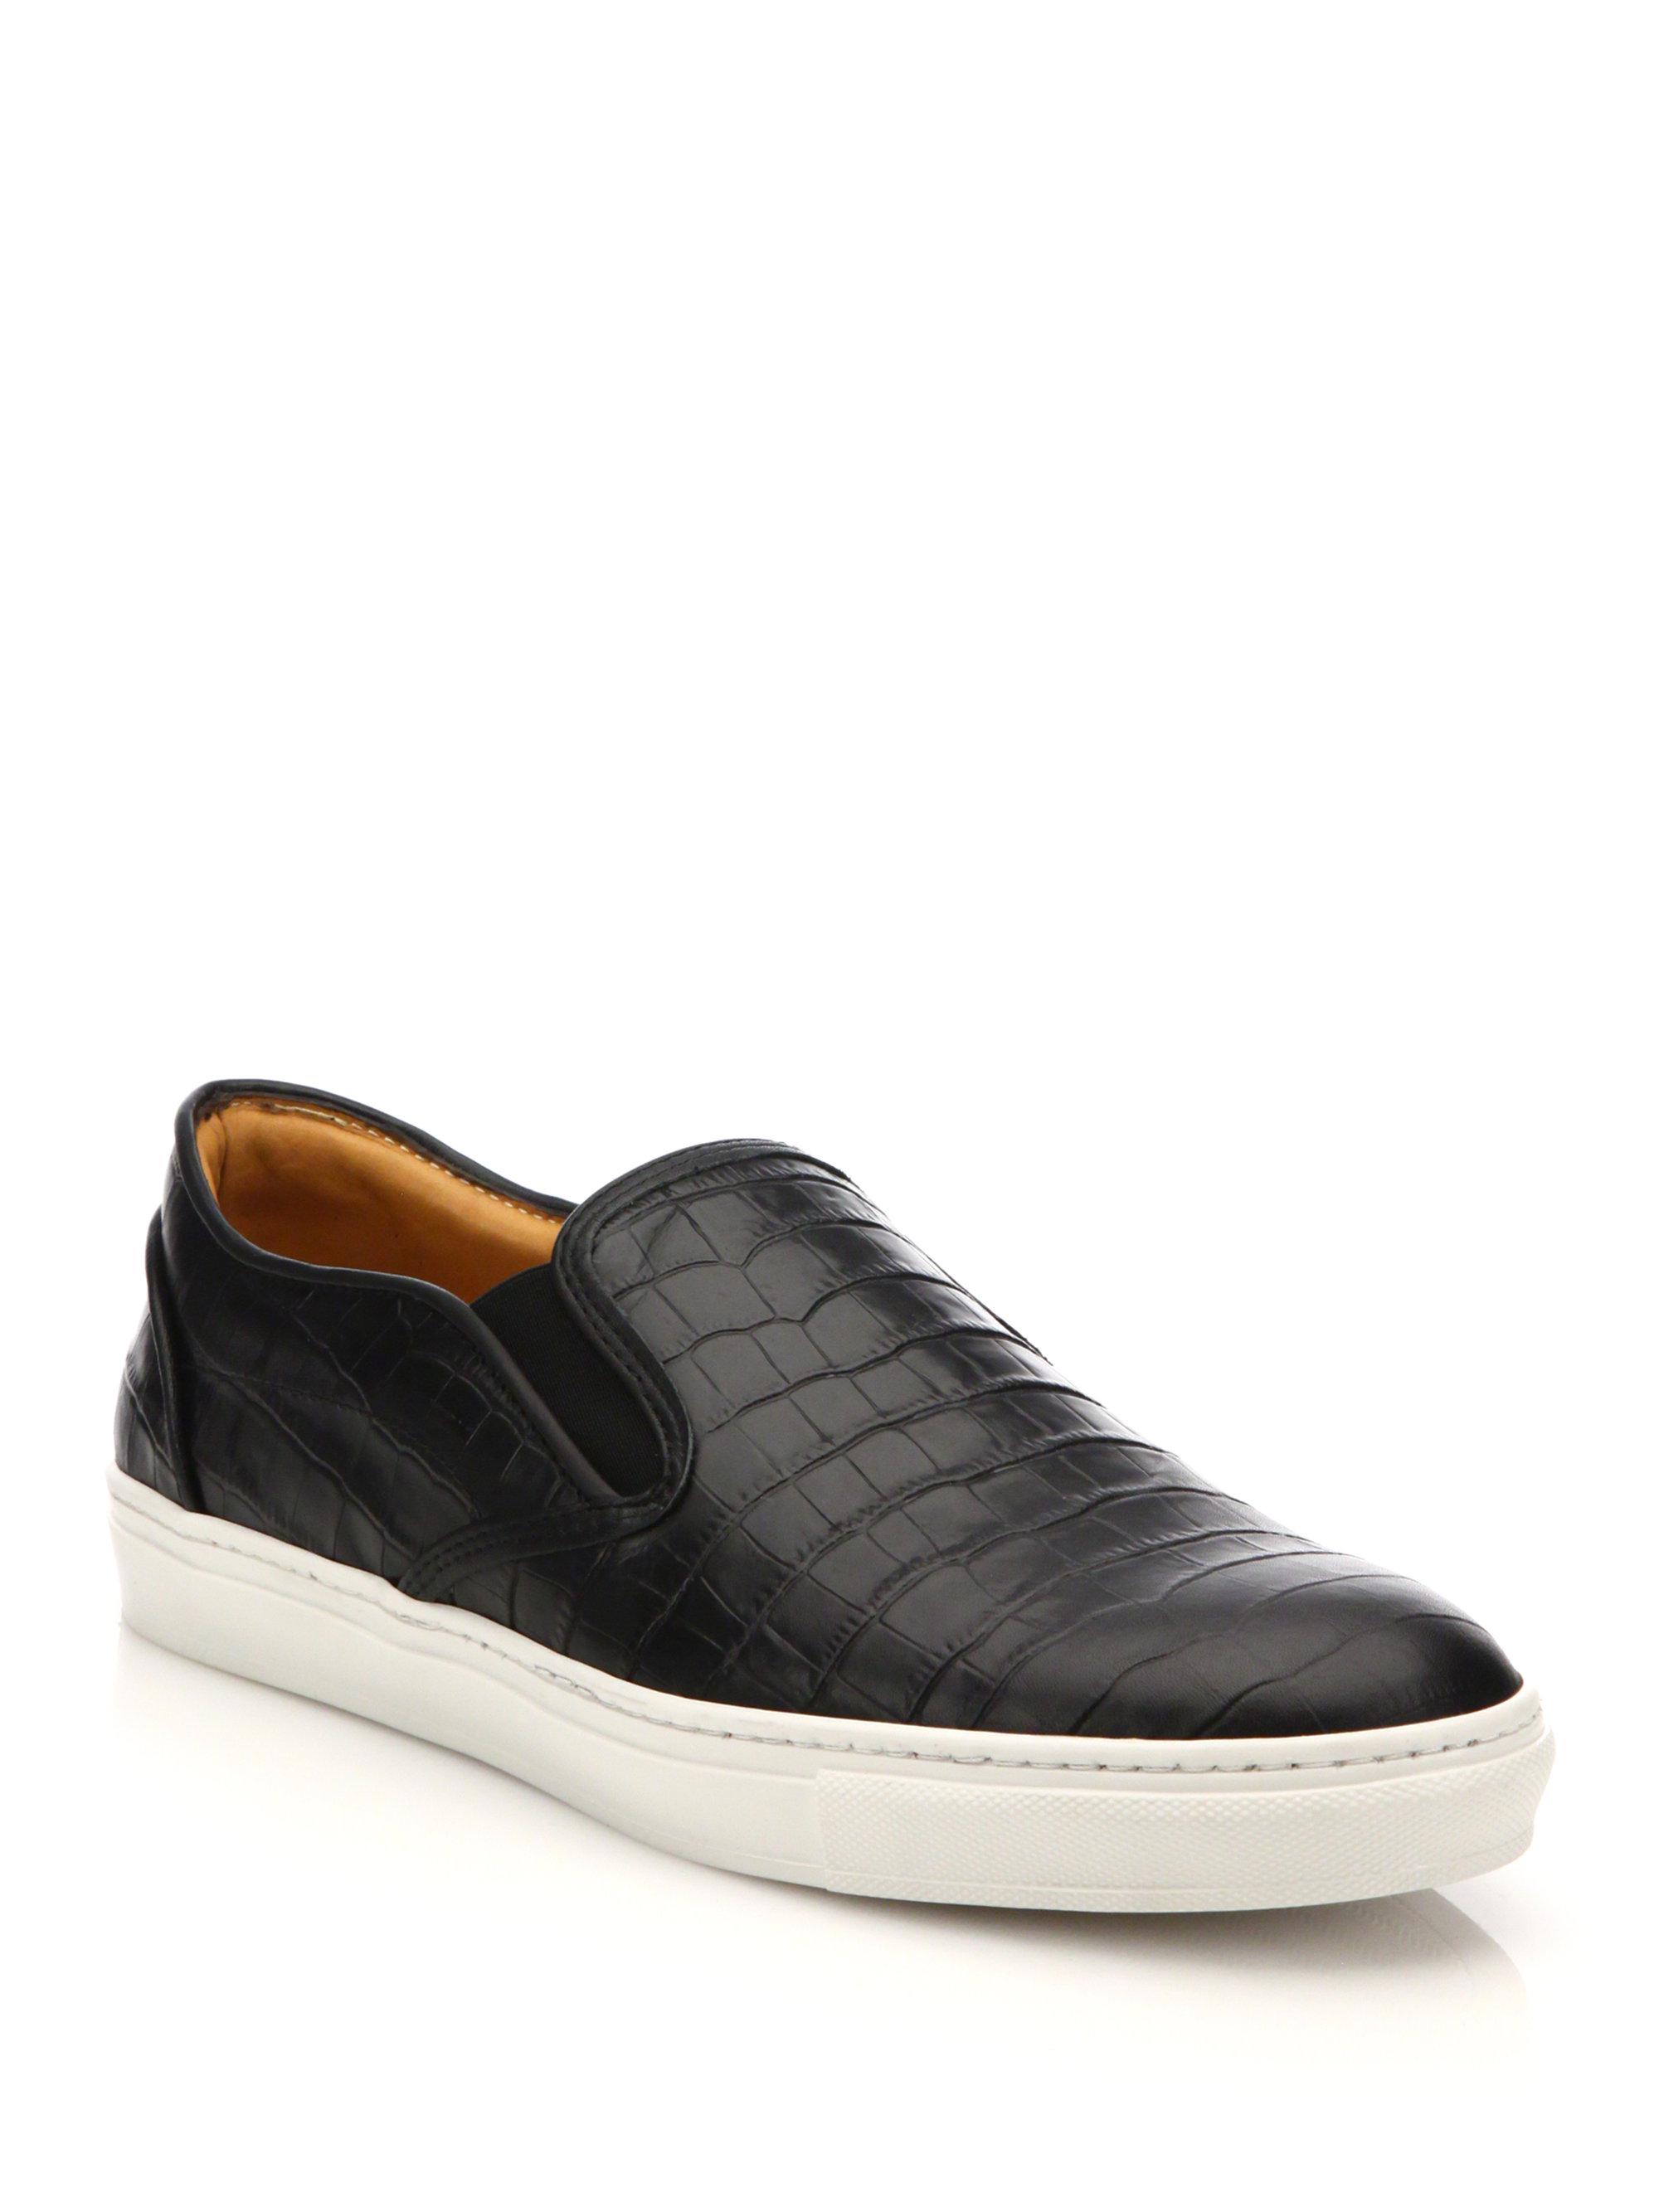 Saks Fifth Avenue Croc Print Slipon Sneakers in Black for